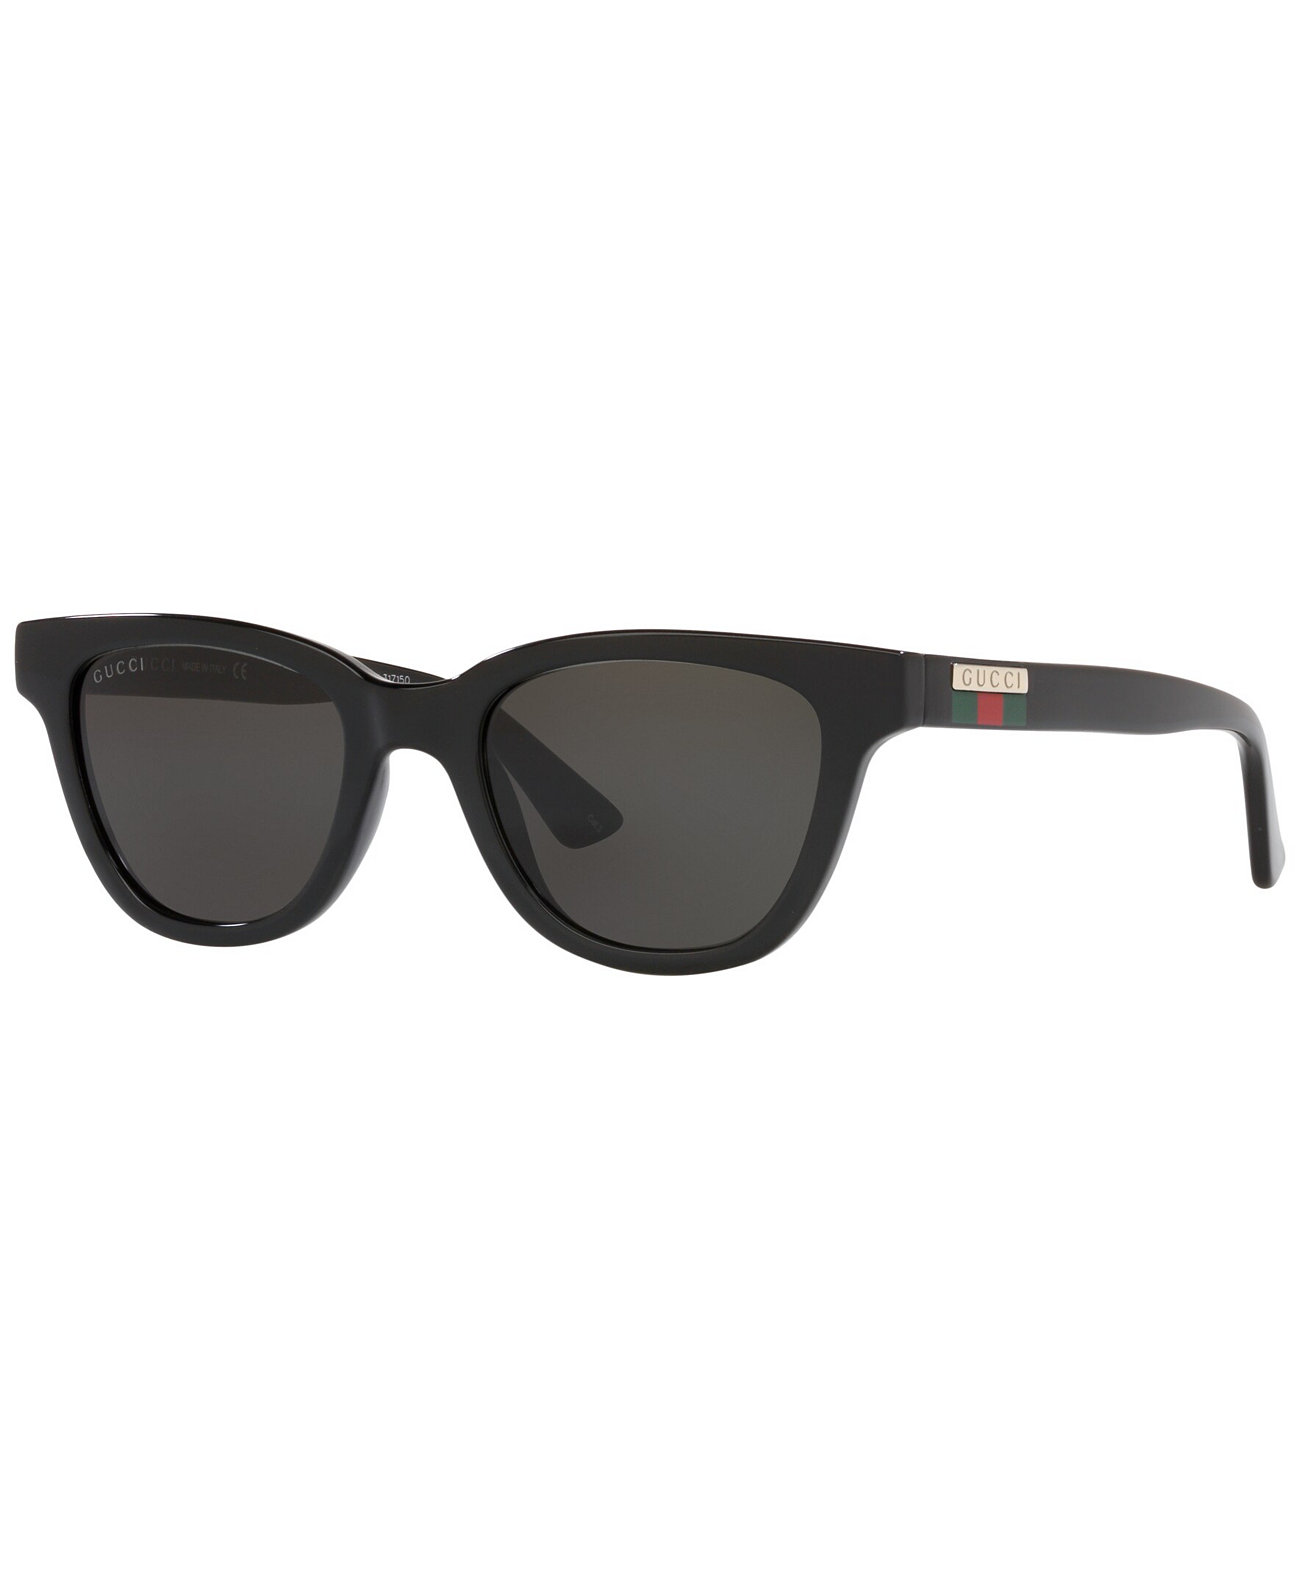 Мужские солнцезащитные очки GG1116S 51, GC00184551-X GUCCI